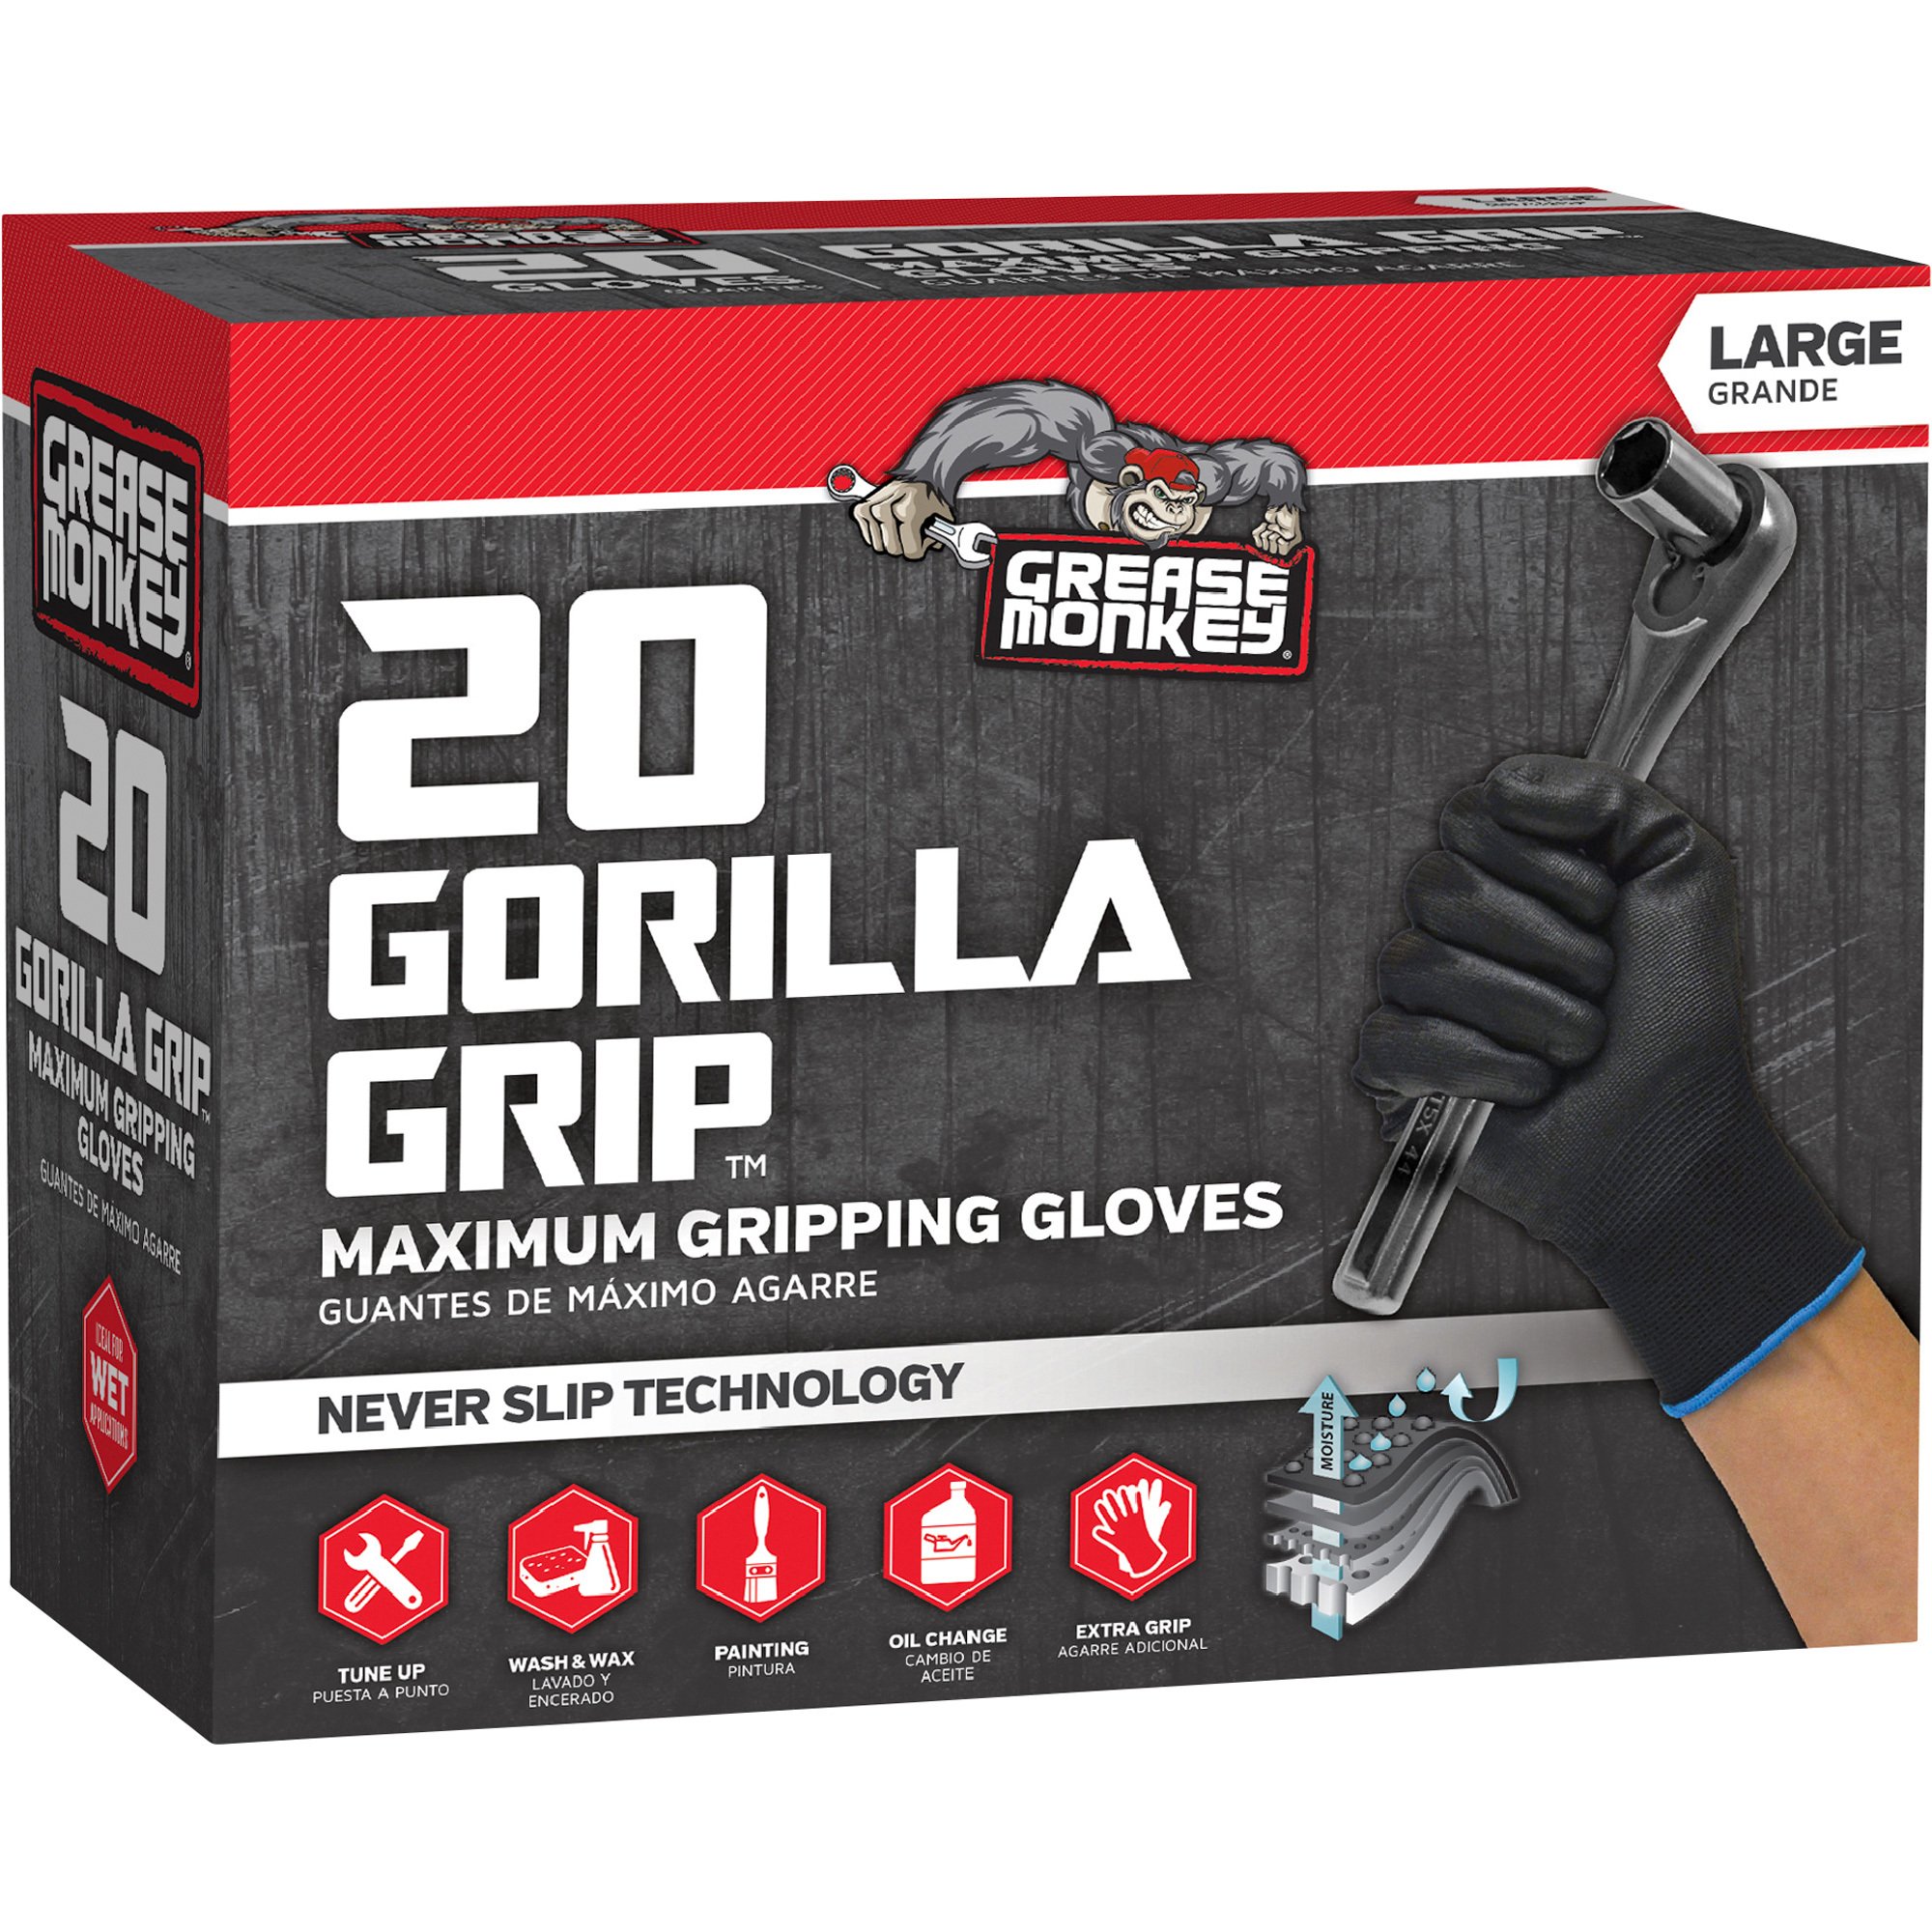 Grease Monkey Men's Gorilla Grip Never Slip Gloves - Large, Model